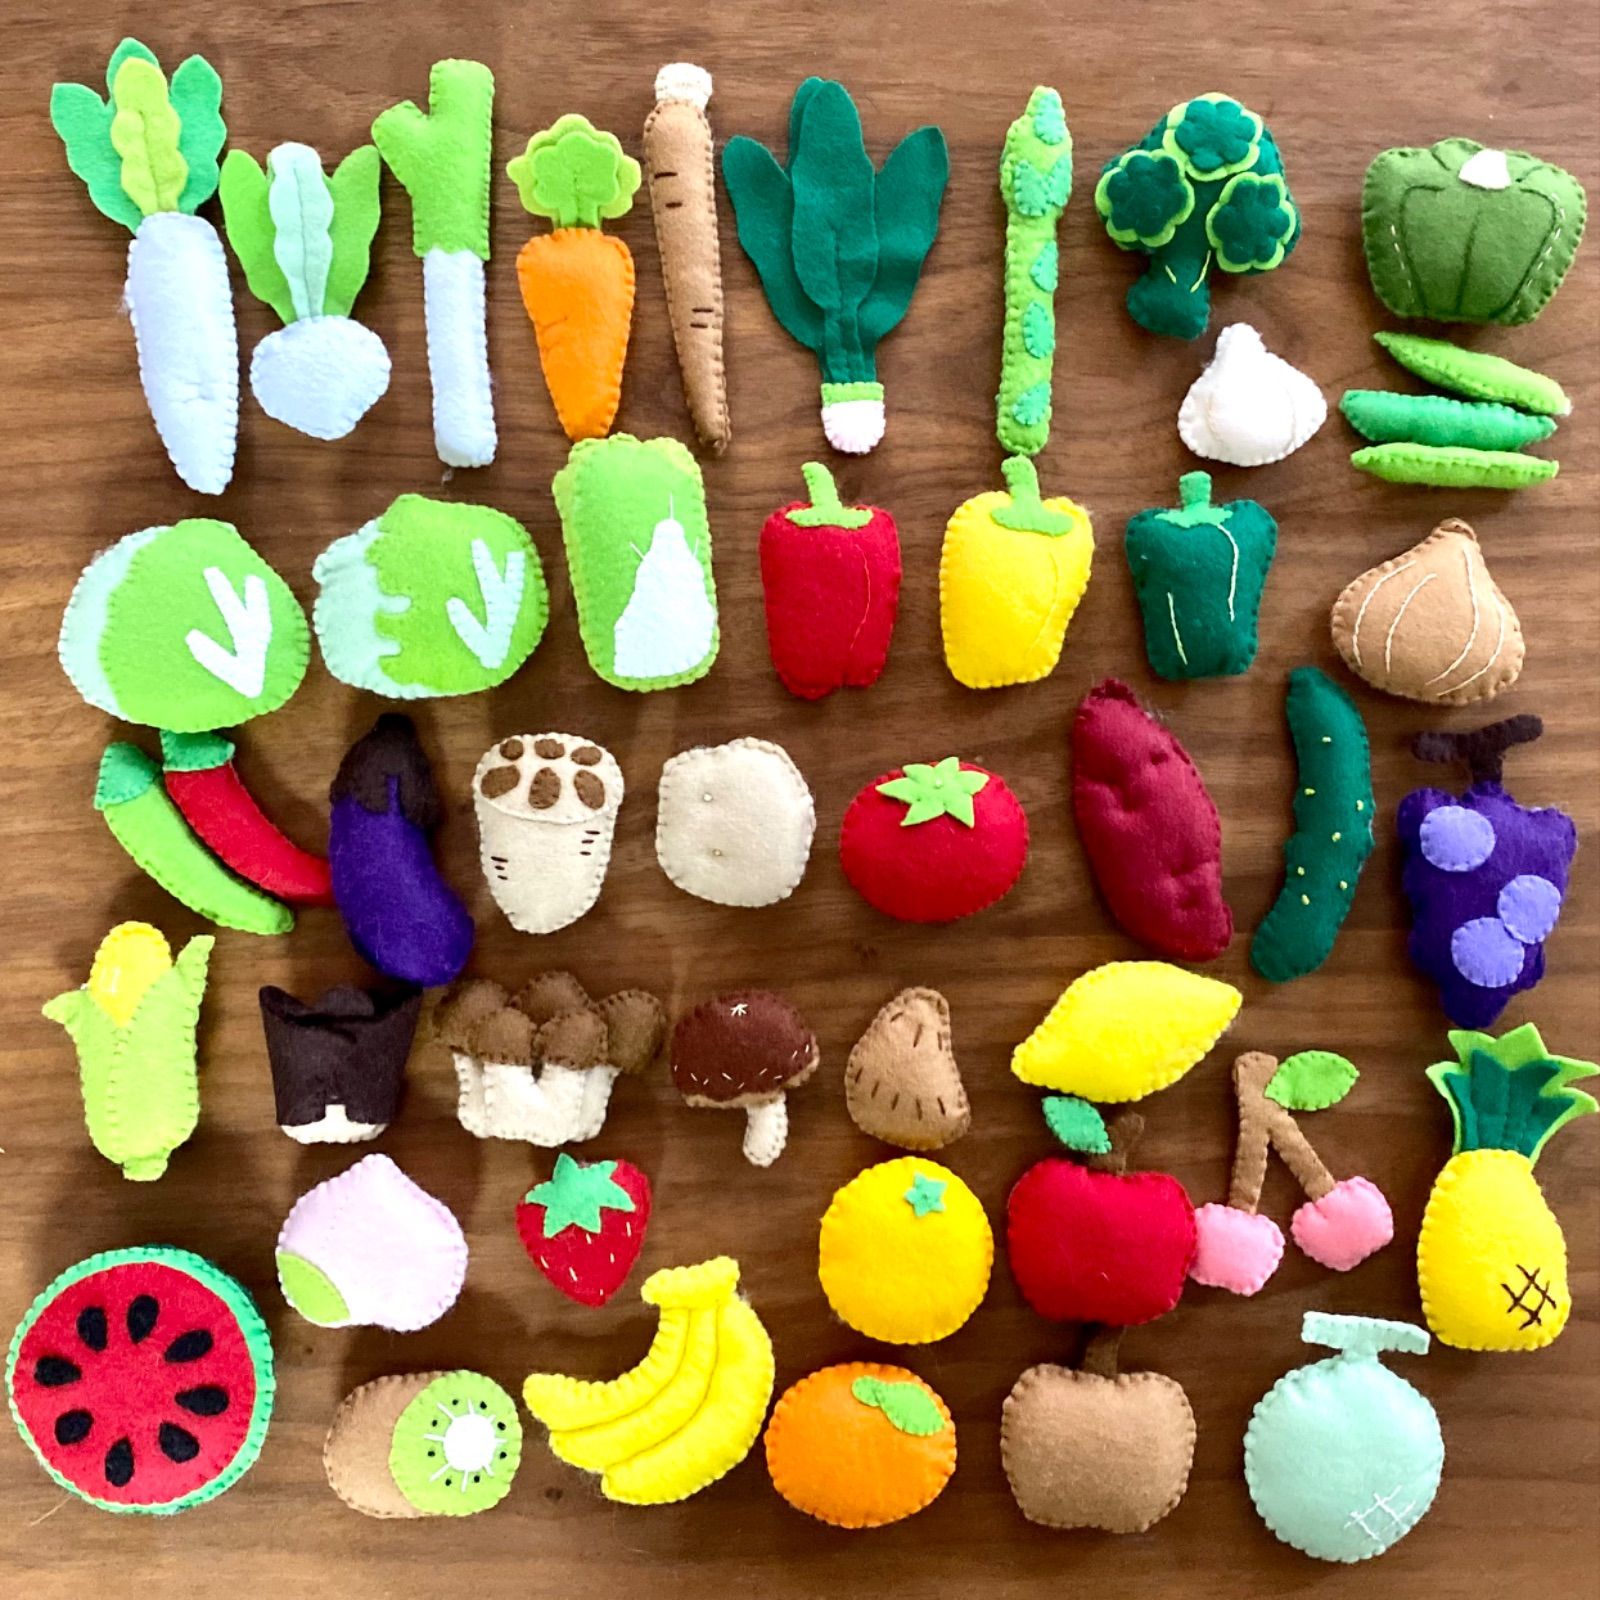 フェルト おままごと 野菜 果物 みーたろー様専用ページ - 知育玩具